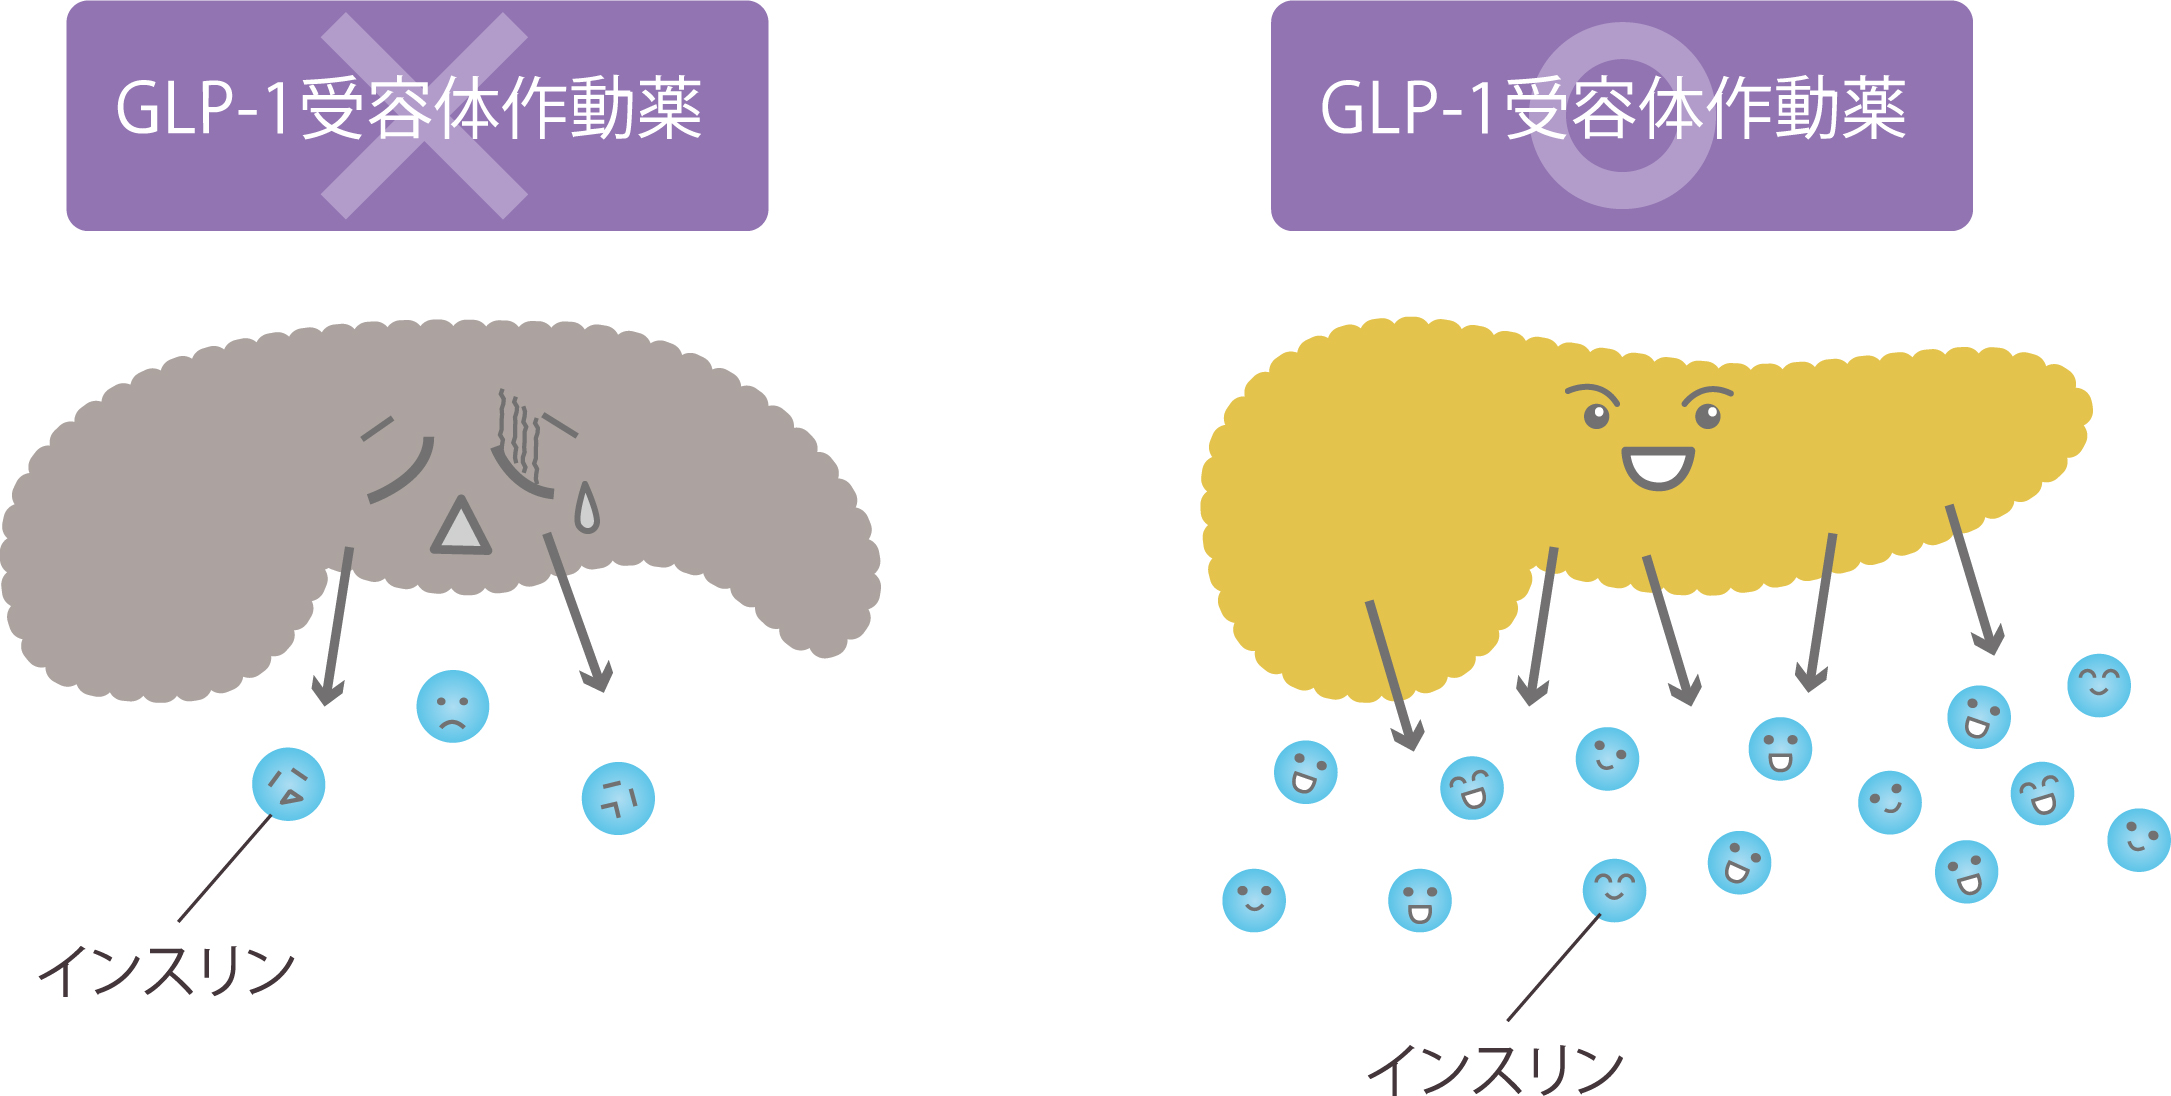 GLP-1受容体作動薬が適している患者さん